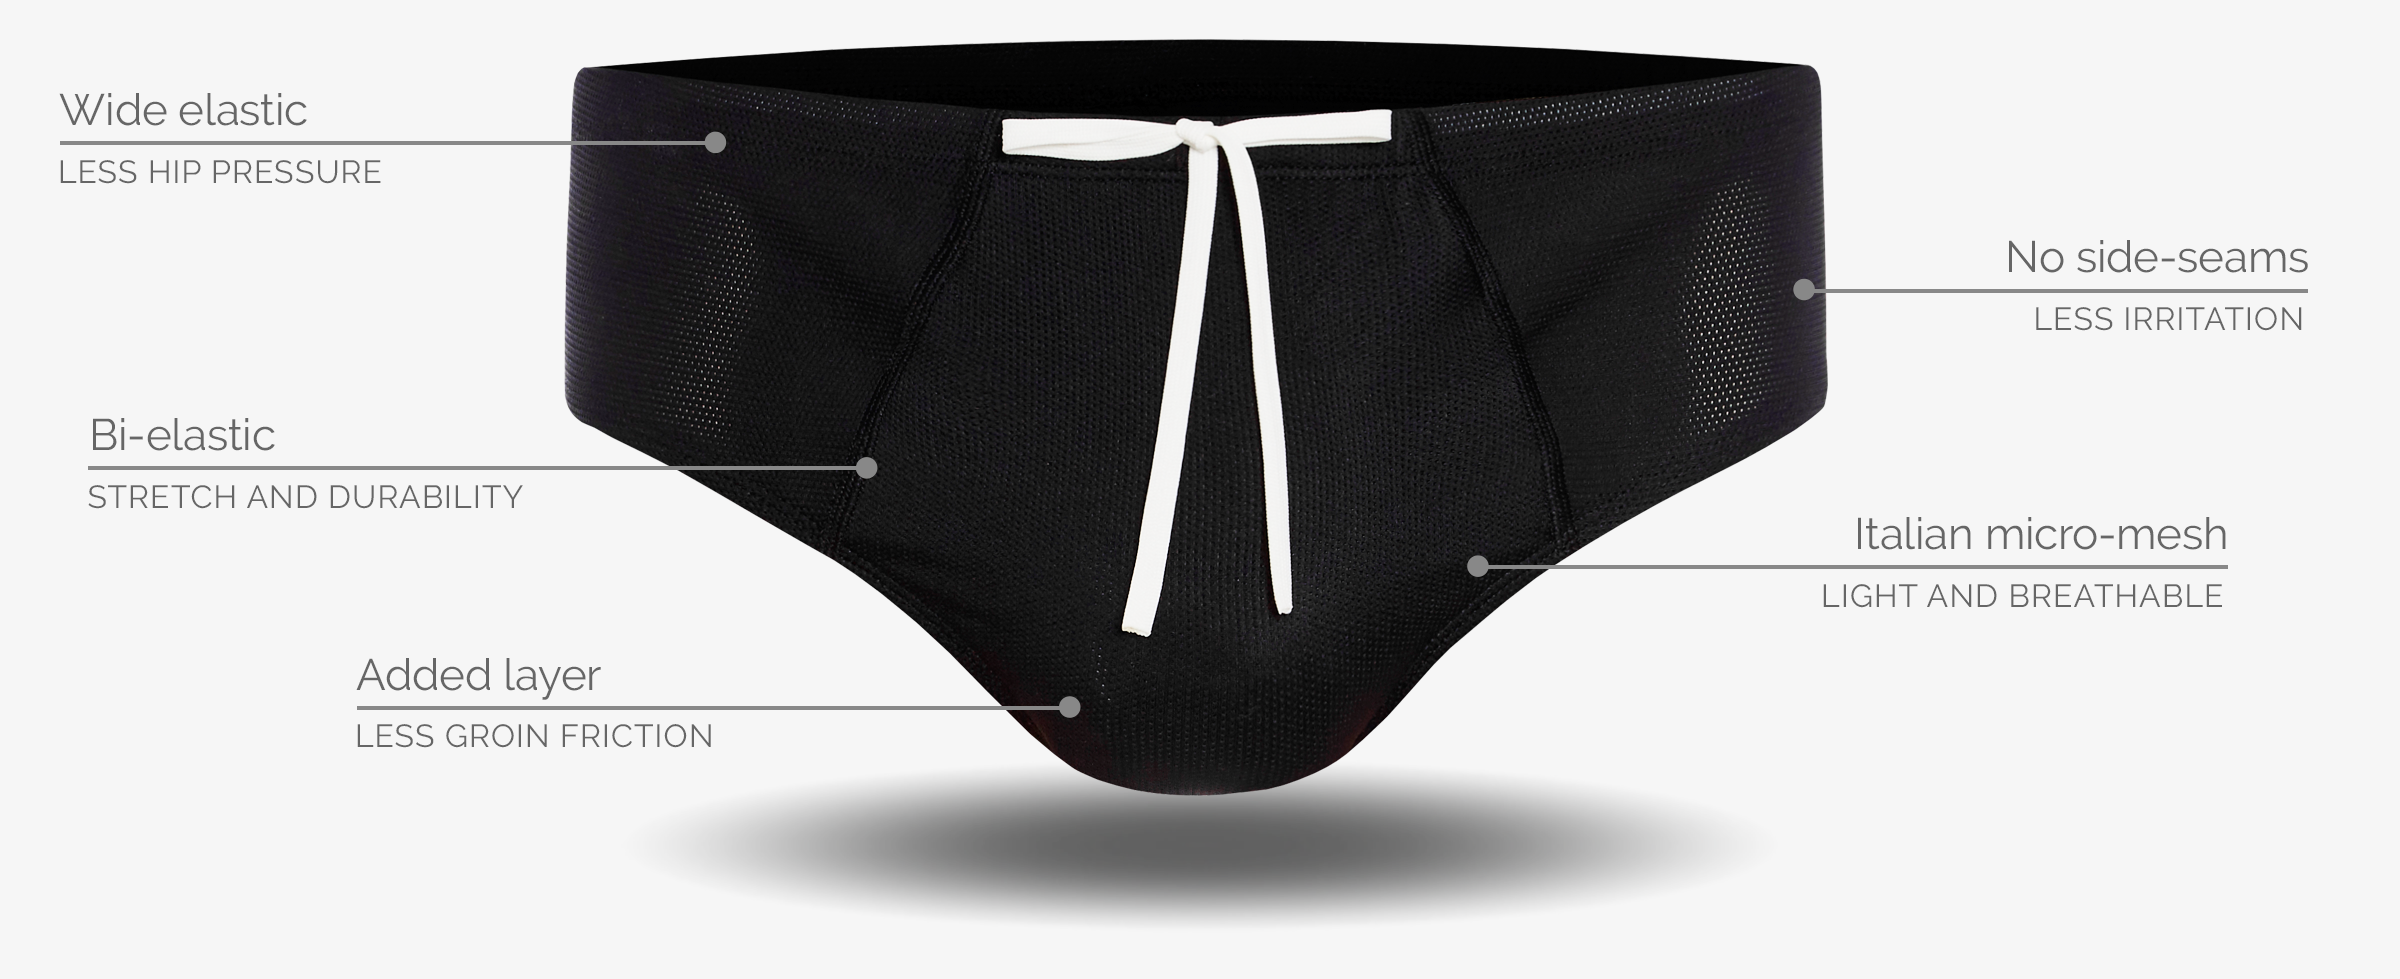 Men's technical sports underwear / briefs